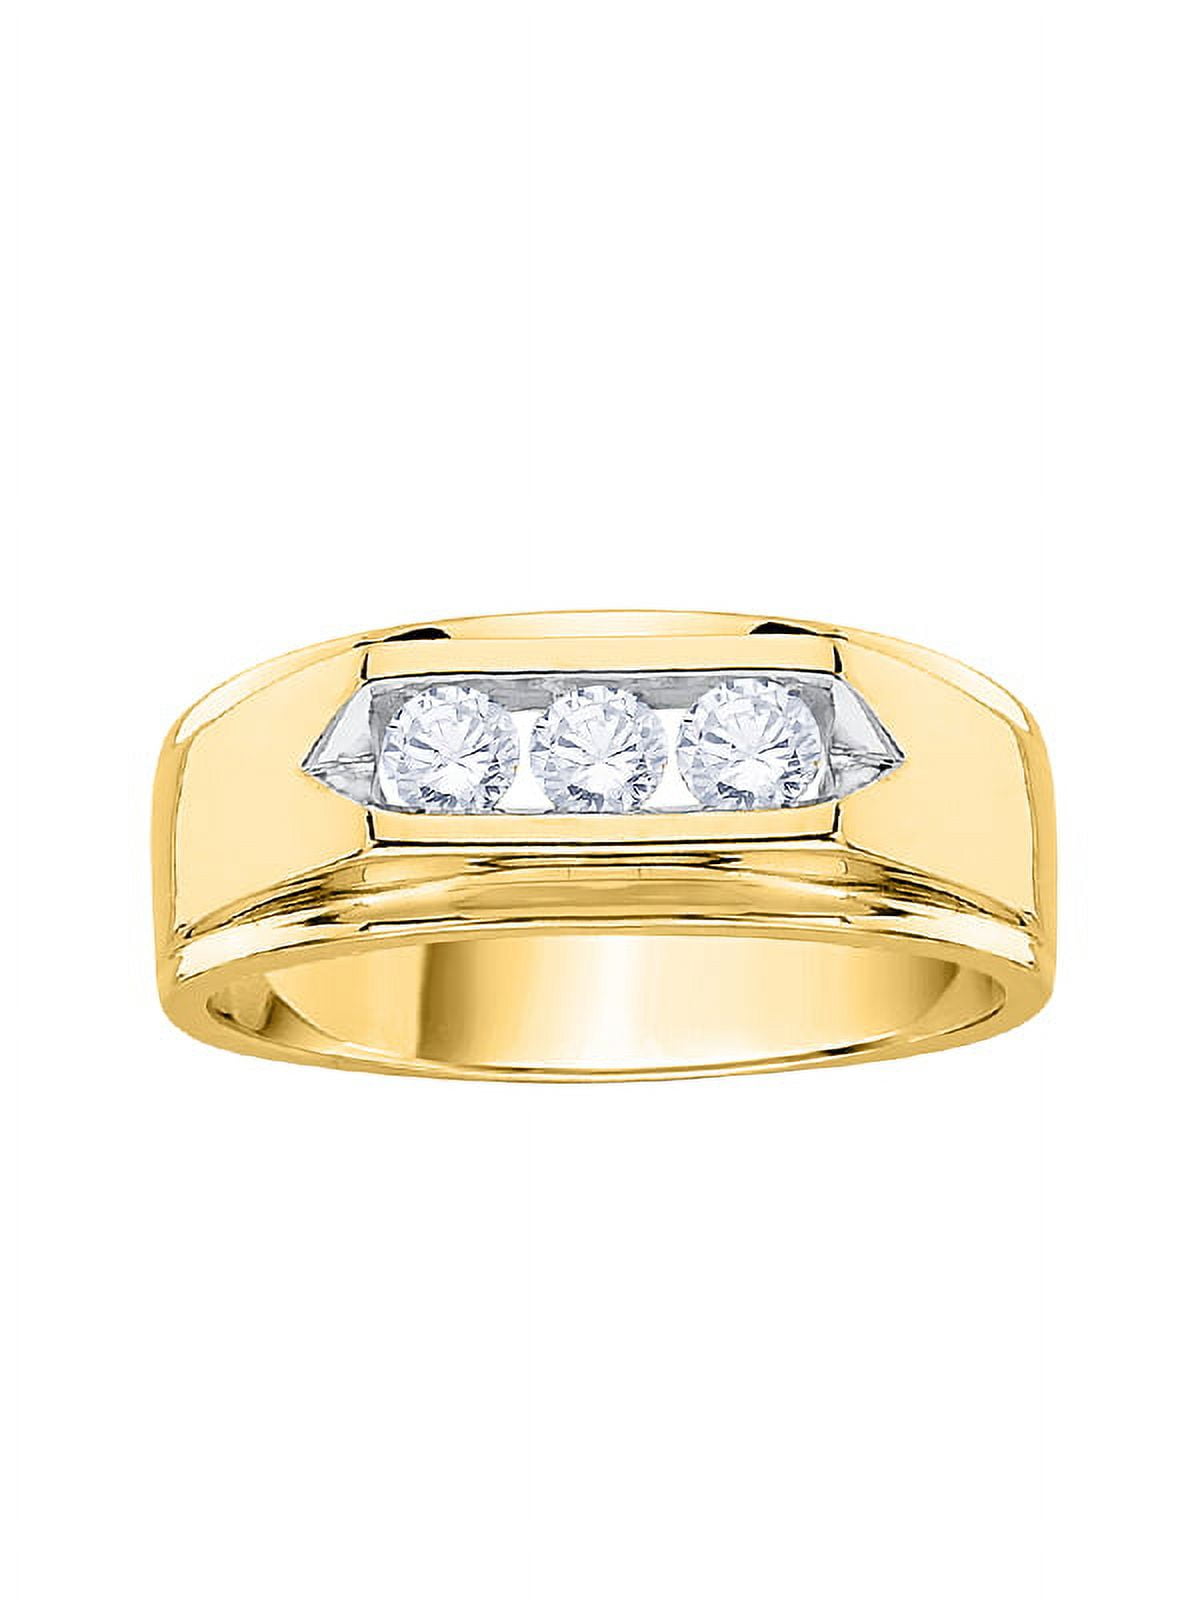 22K Gold 9 Stones Men's Navrattan Ring with Diamond - 235-GR3463 in 10.350  Grams